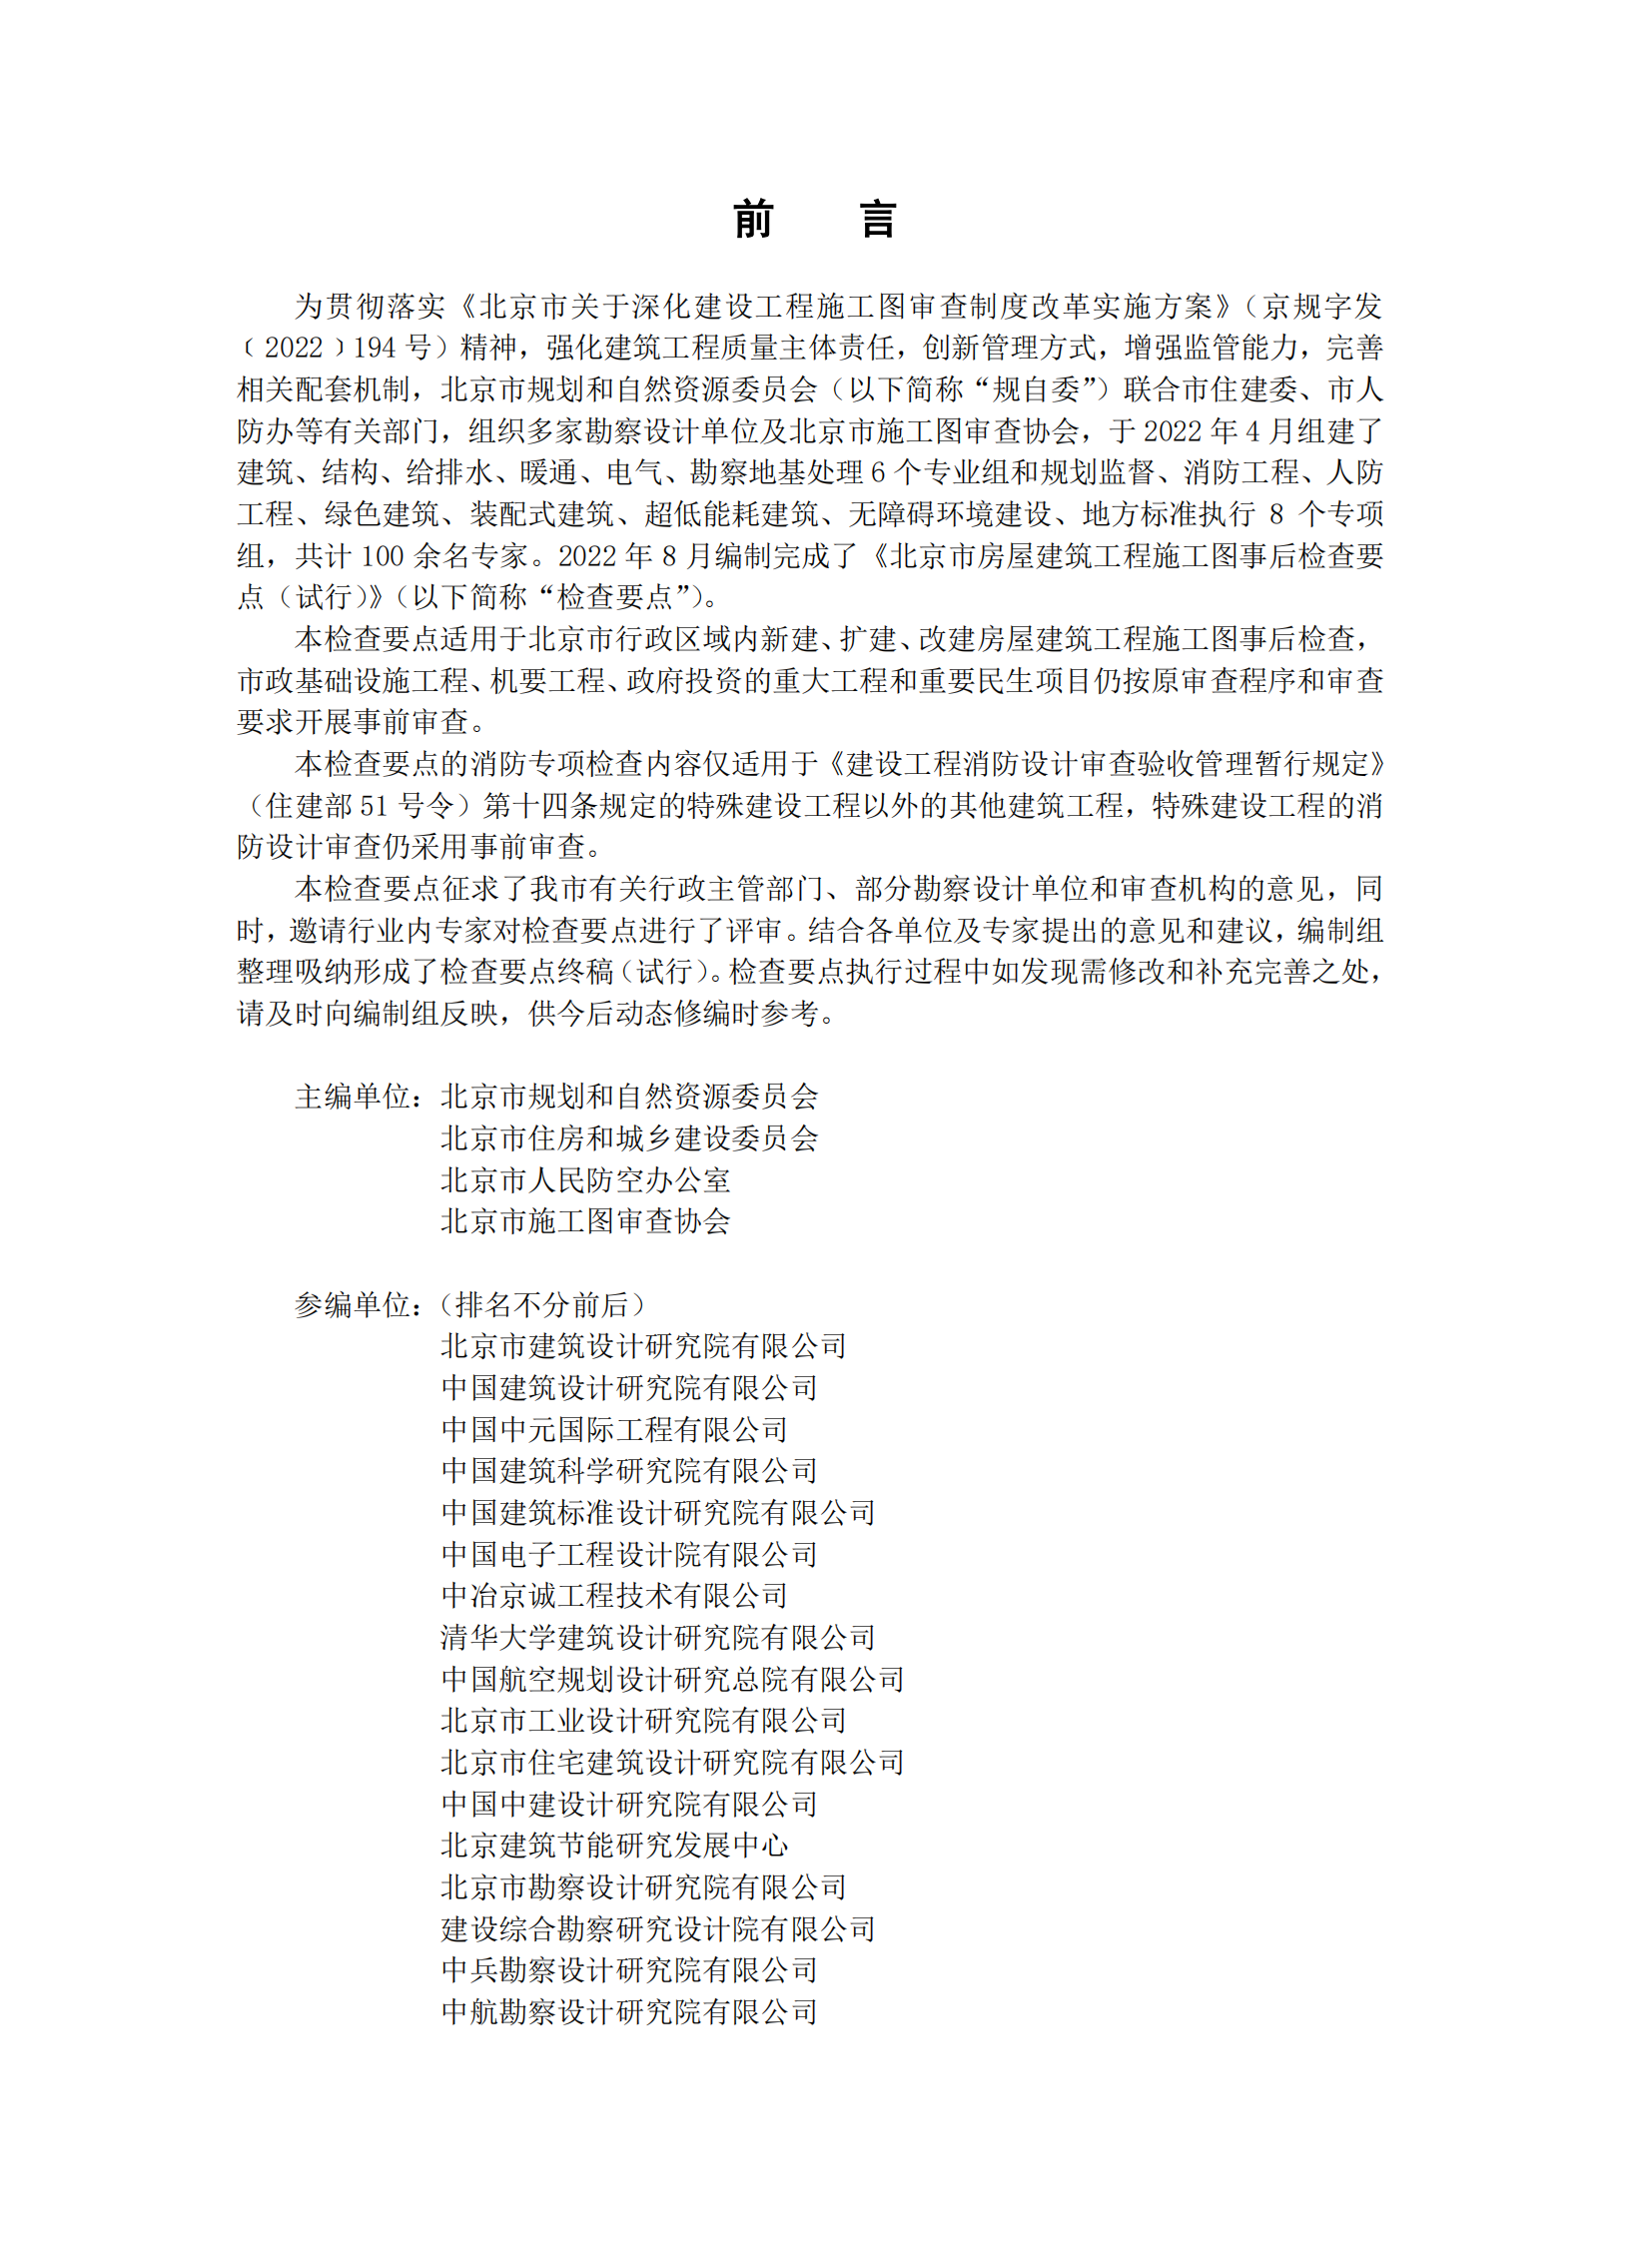 北京市房屋建筑工程施工图事后检查要点（上下册）插图(2)